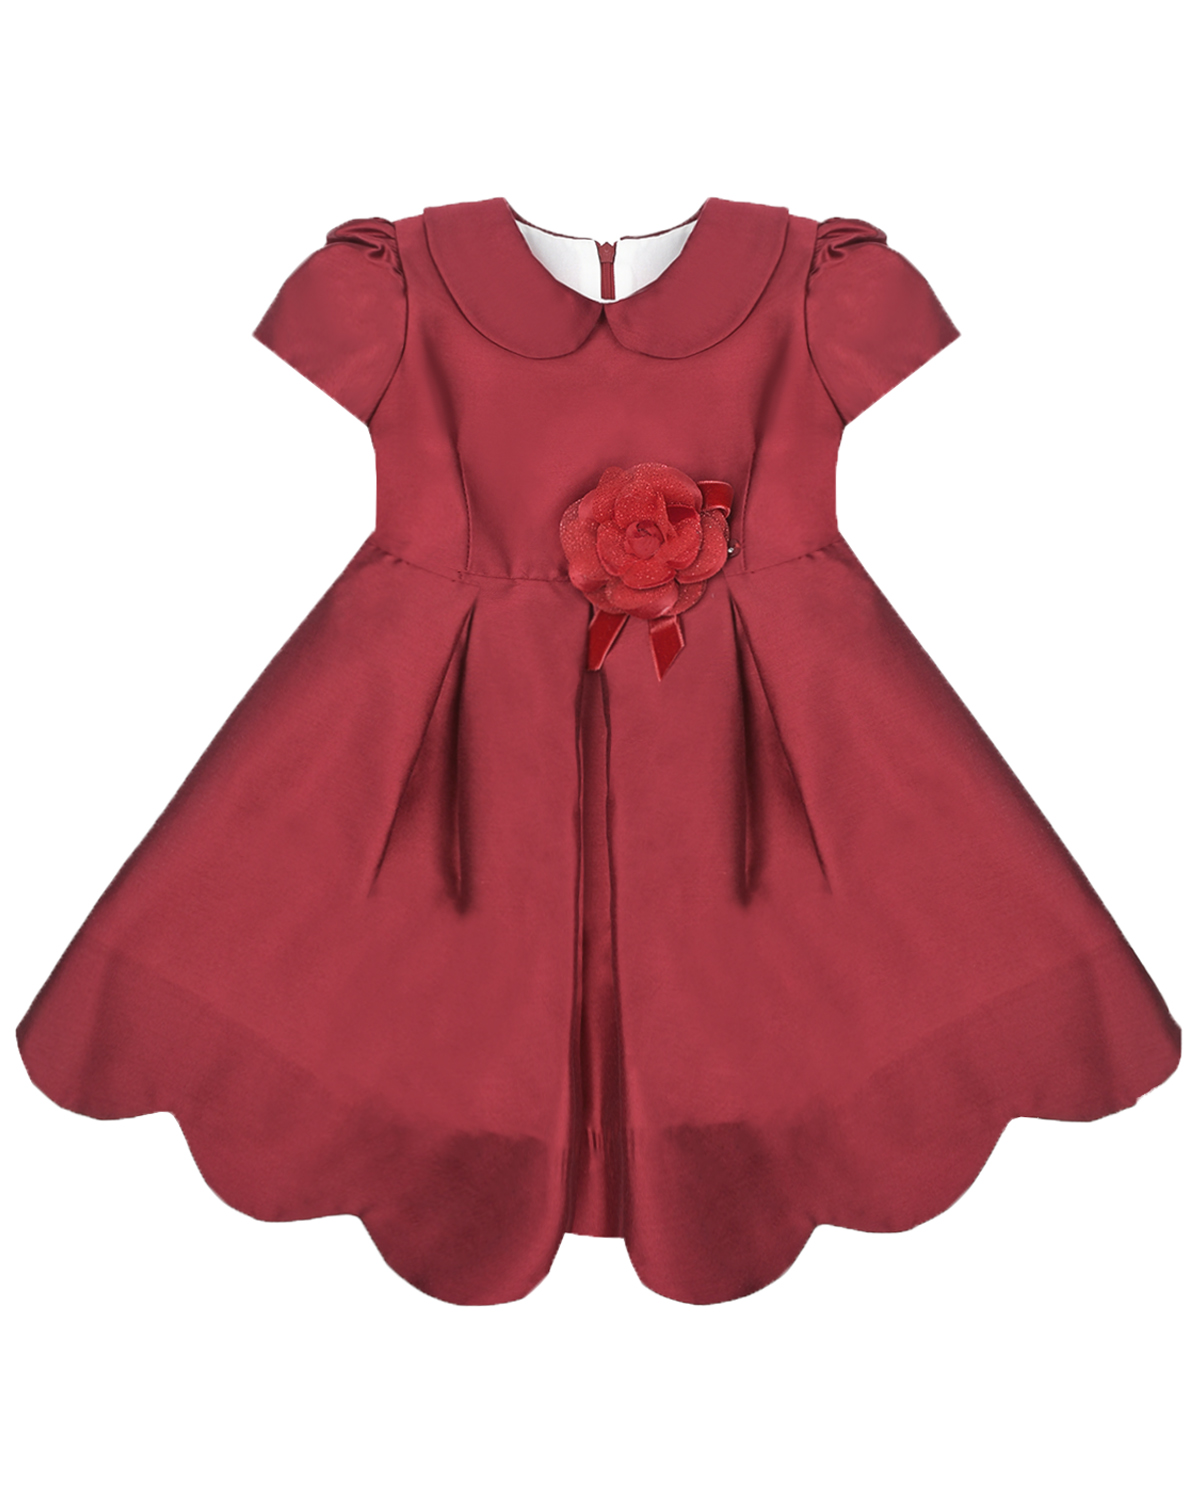 Красное атласное платье с цветком на талии Baby A детское, размер 80